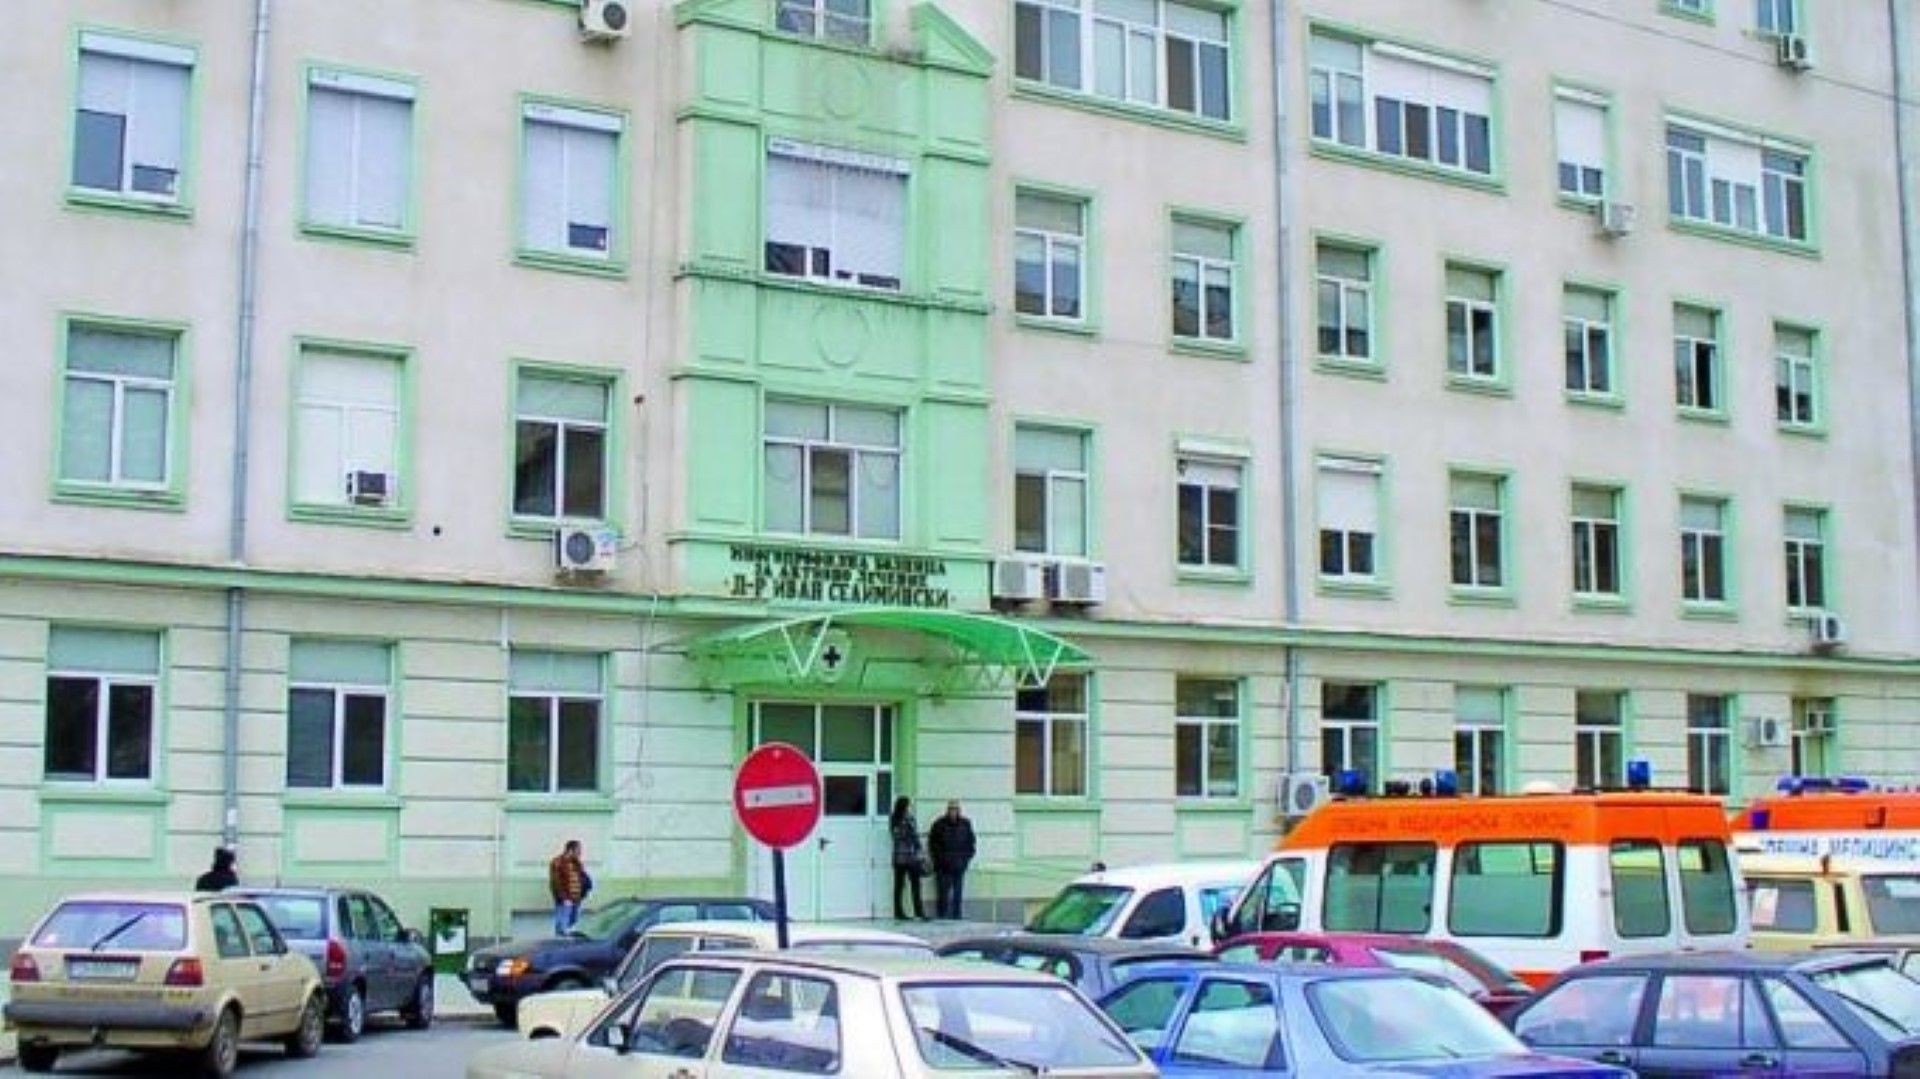 Руси Русев е издъхнал в сливенската болница